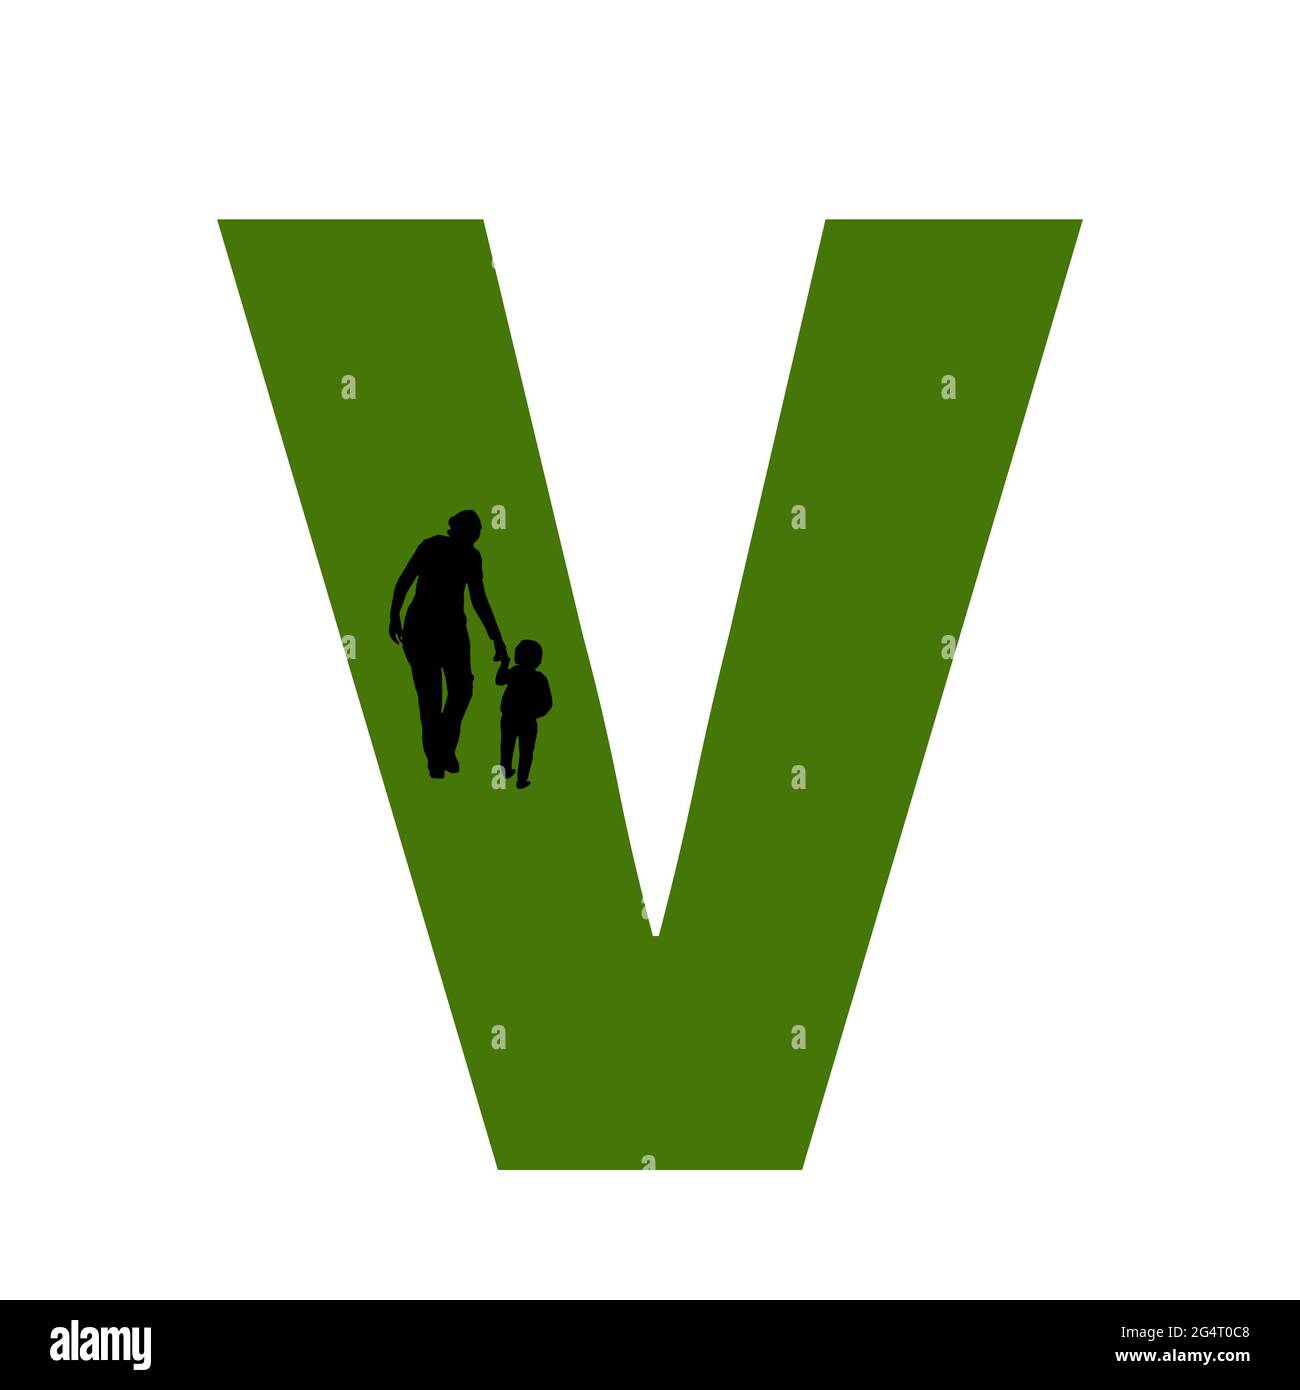 Lettre V de l'alphabet avec silhouette d'une mère et d'un enfant marchant, en vert et noir Banque D'Images